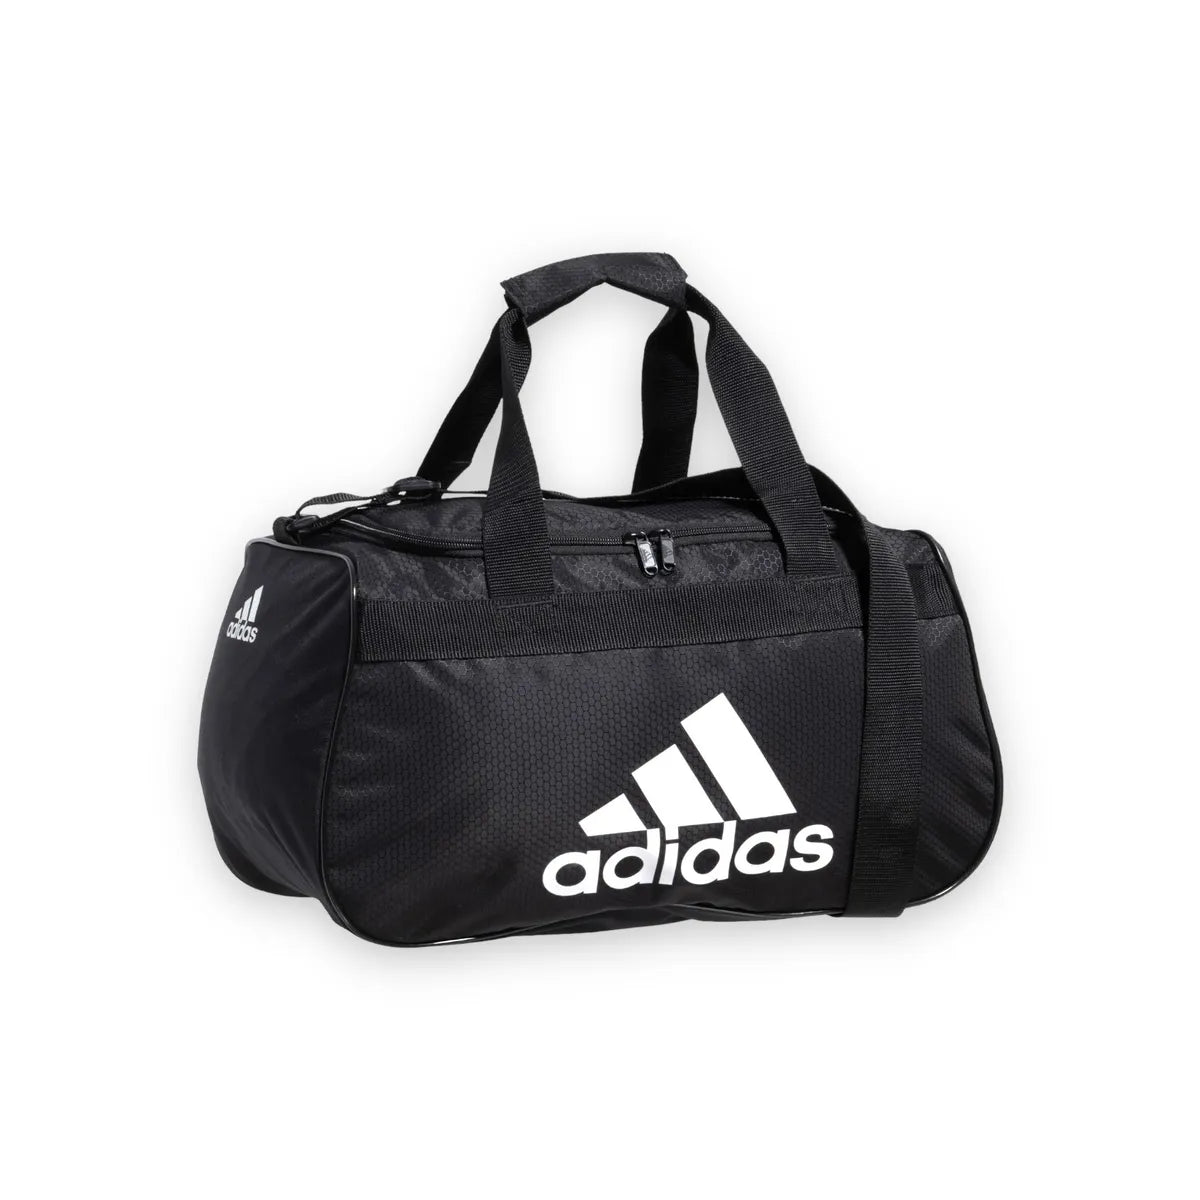 Adidas Gear Up Diablo Small Duffel Bag Black